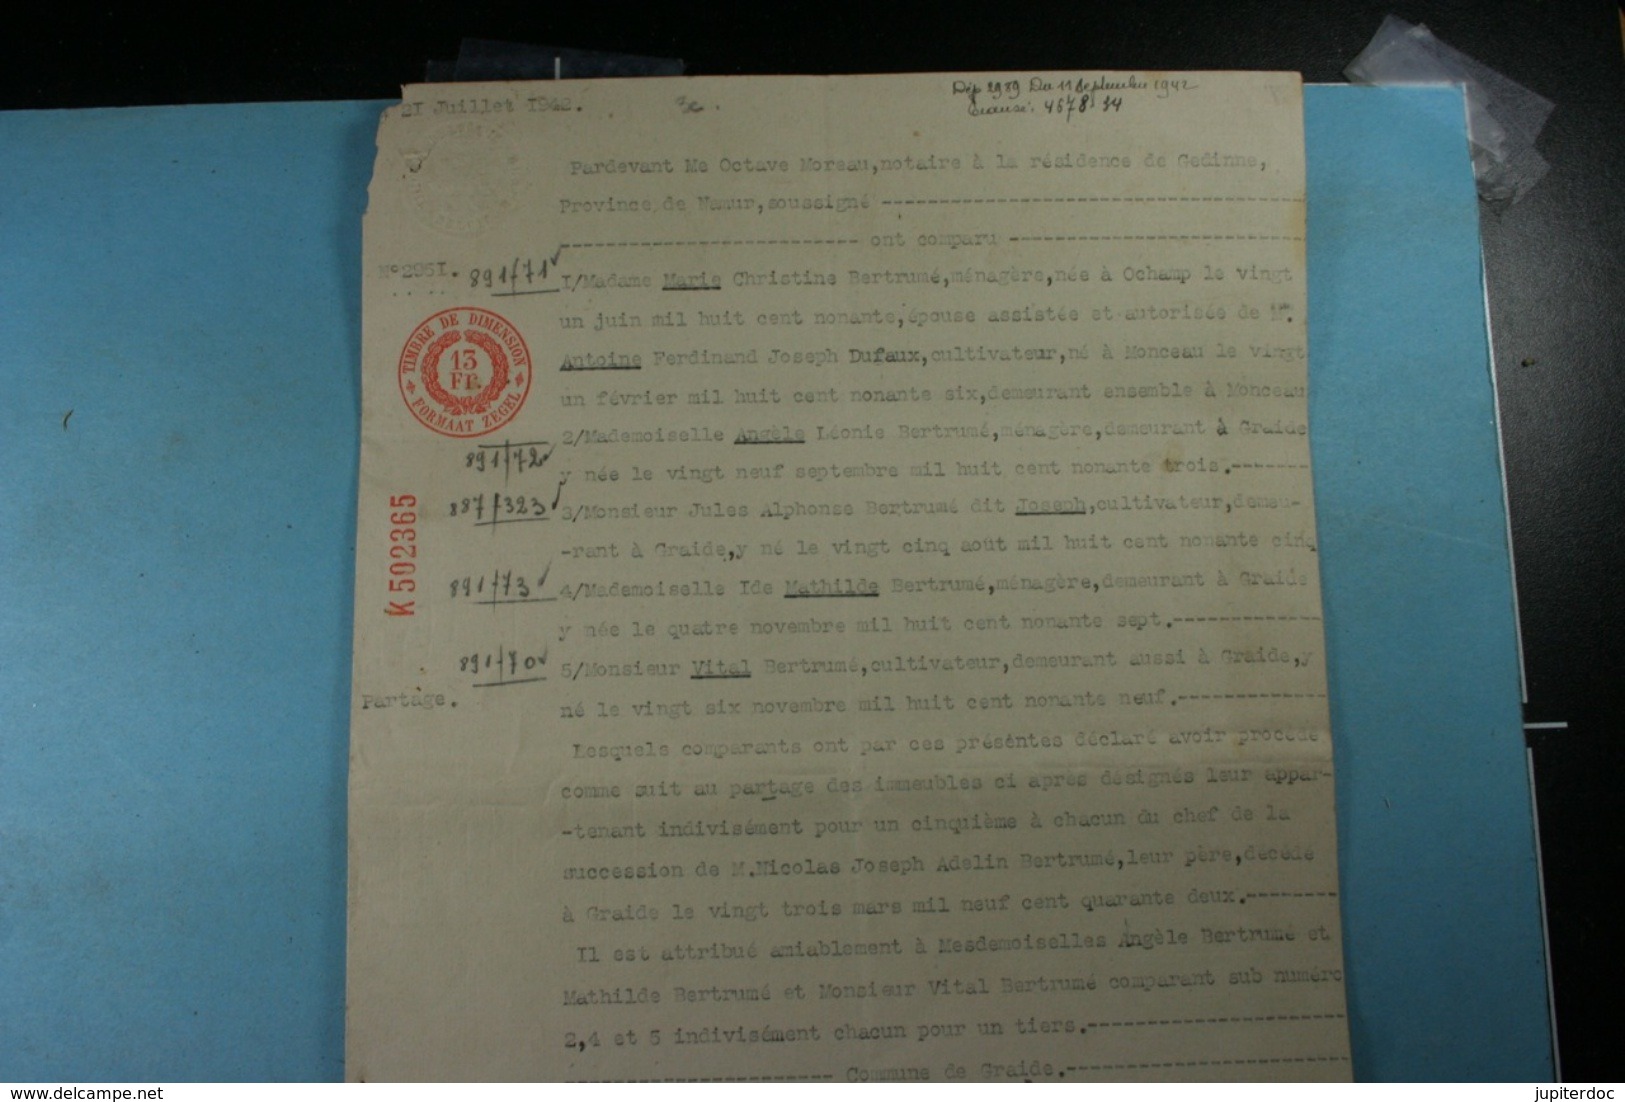 Lot de vieux documents sur Gembes et Graide (Gedinne) de 1881 à 1924